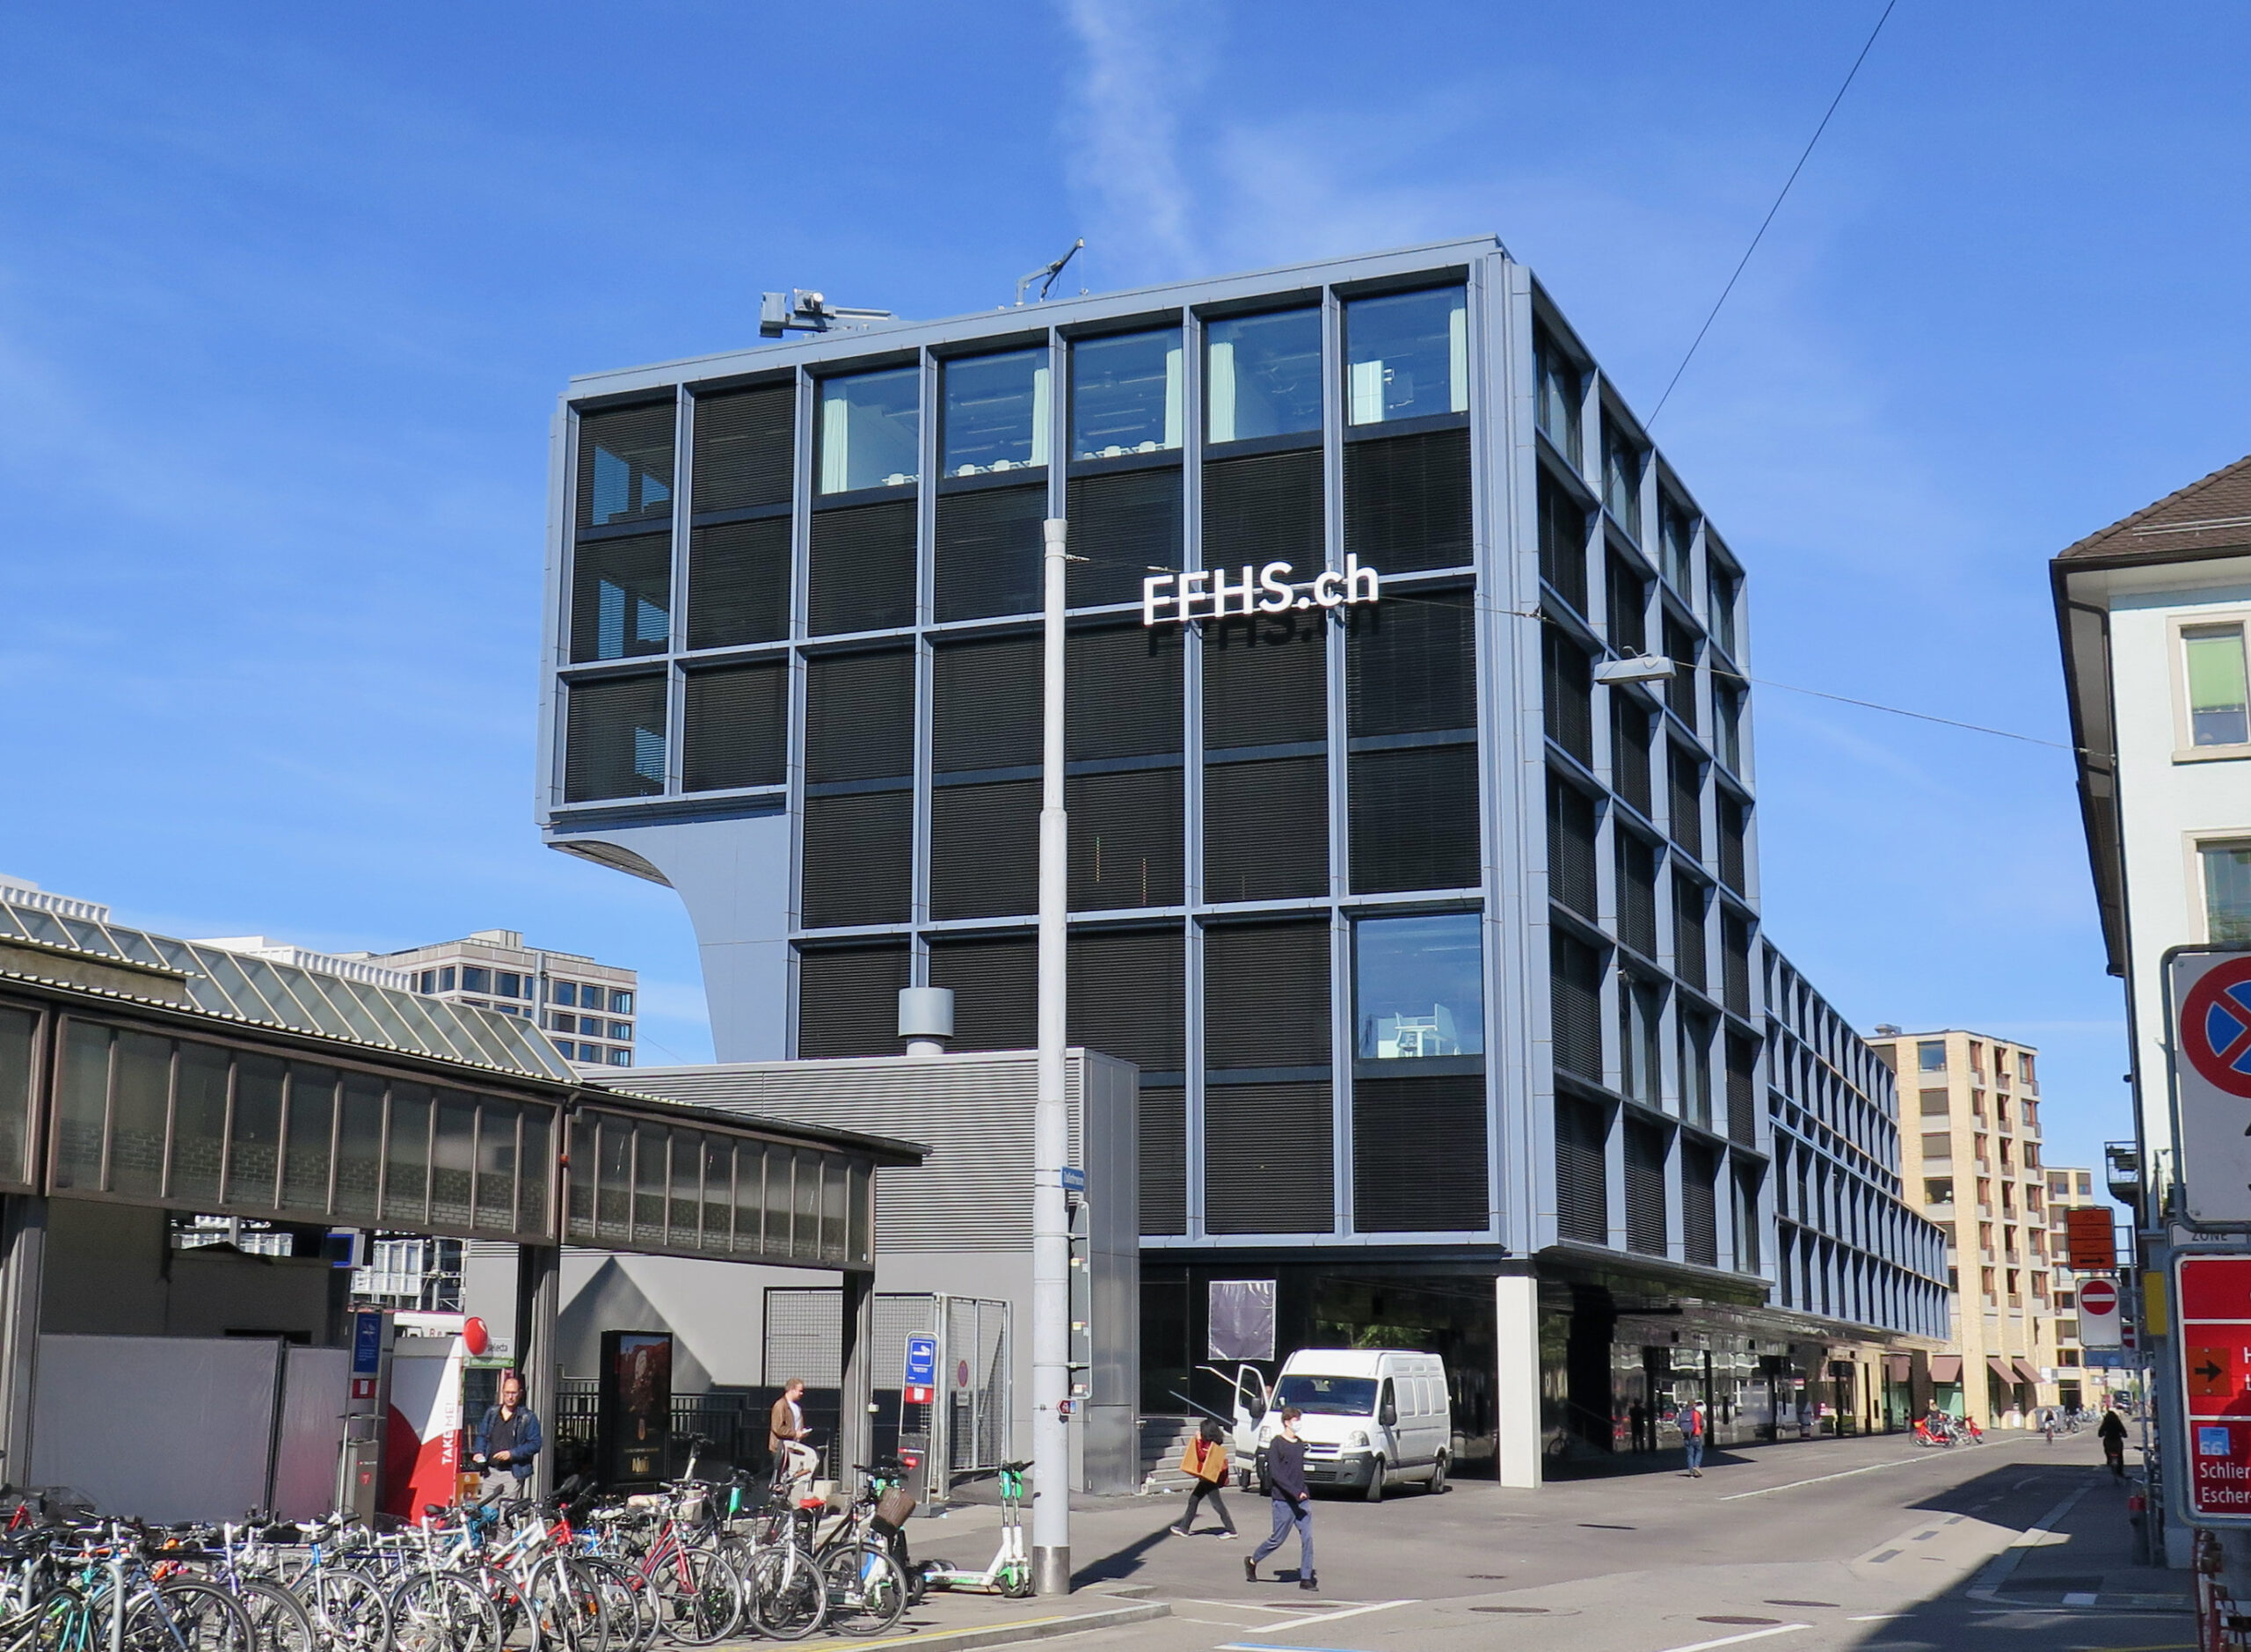 FFHS informiert mit MultiWeb im neuen Campus Gleisarena Zürich